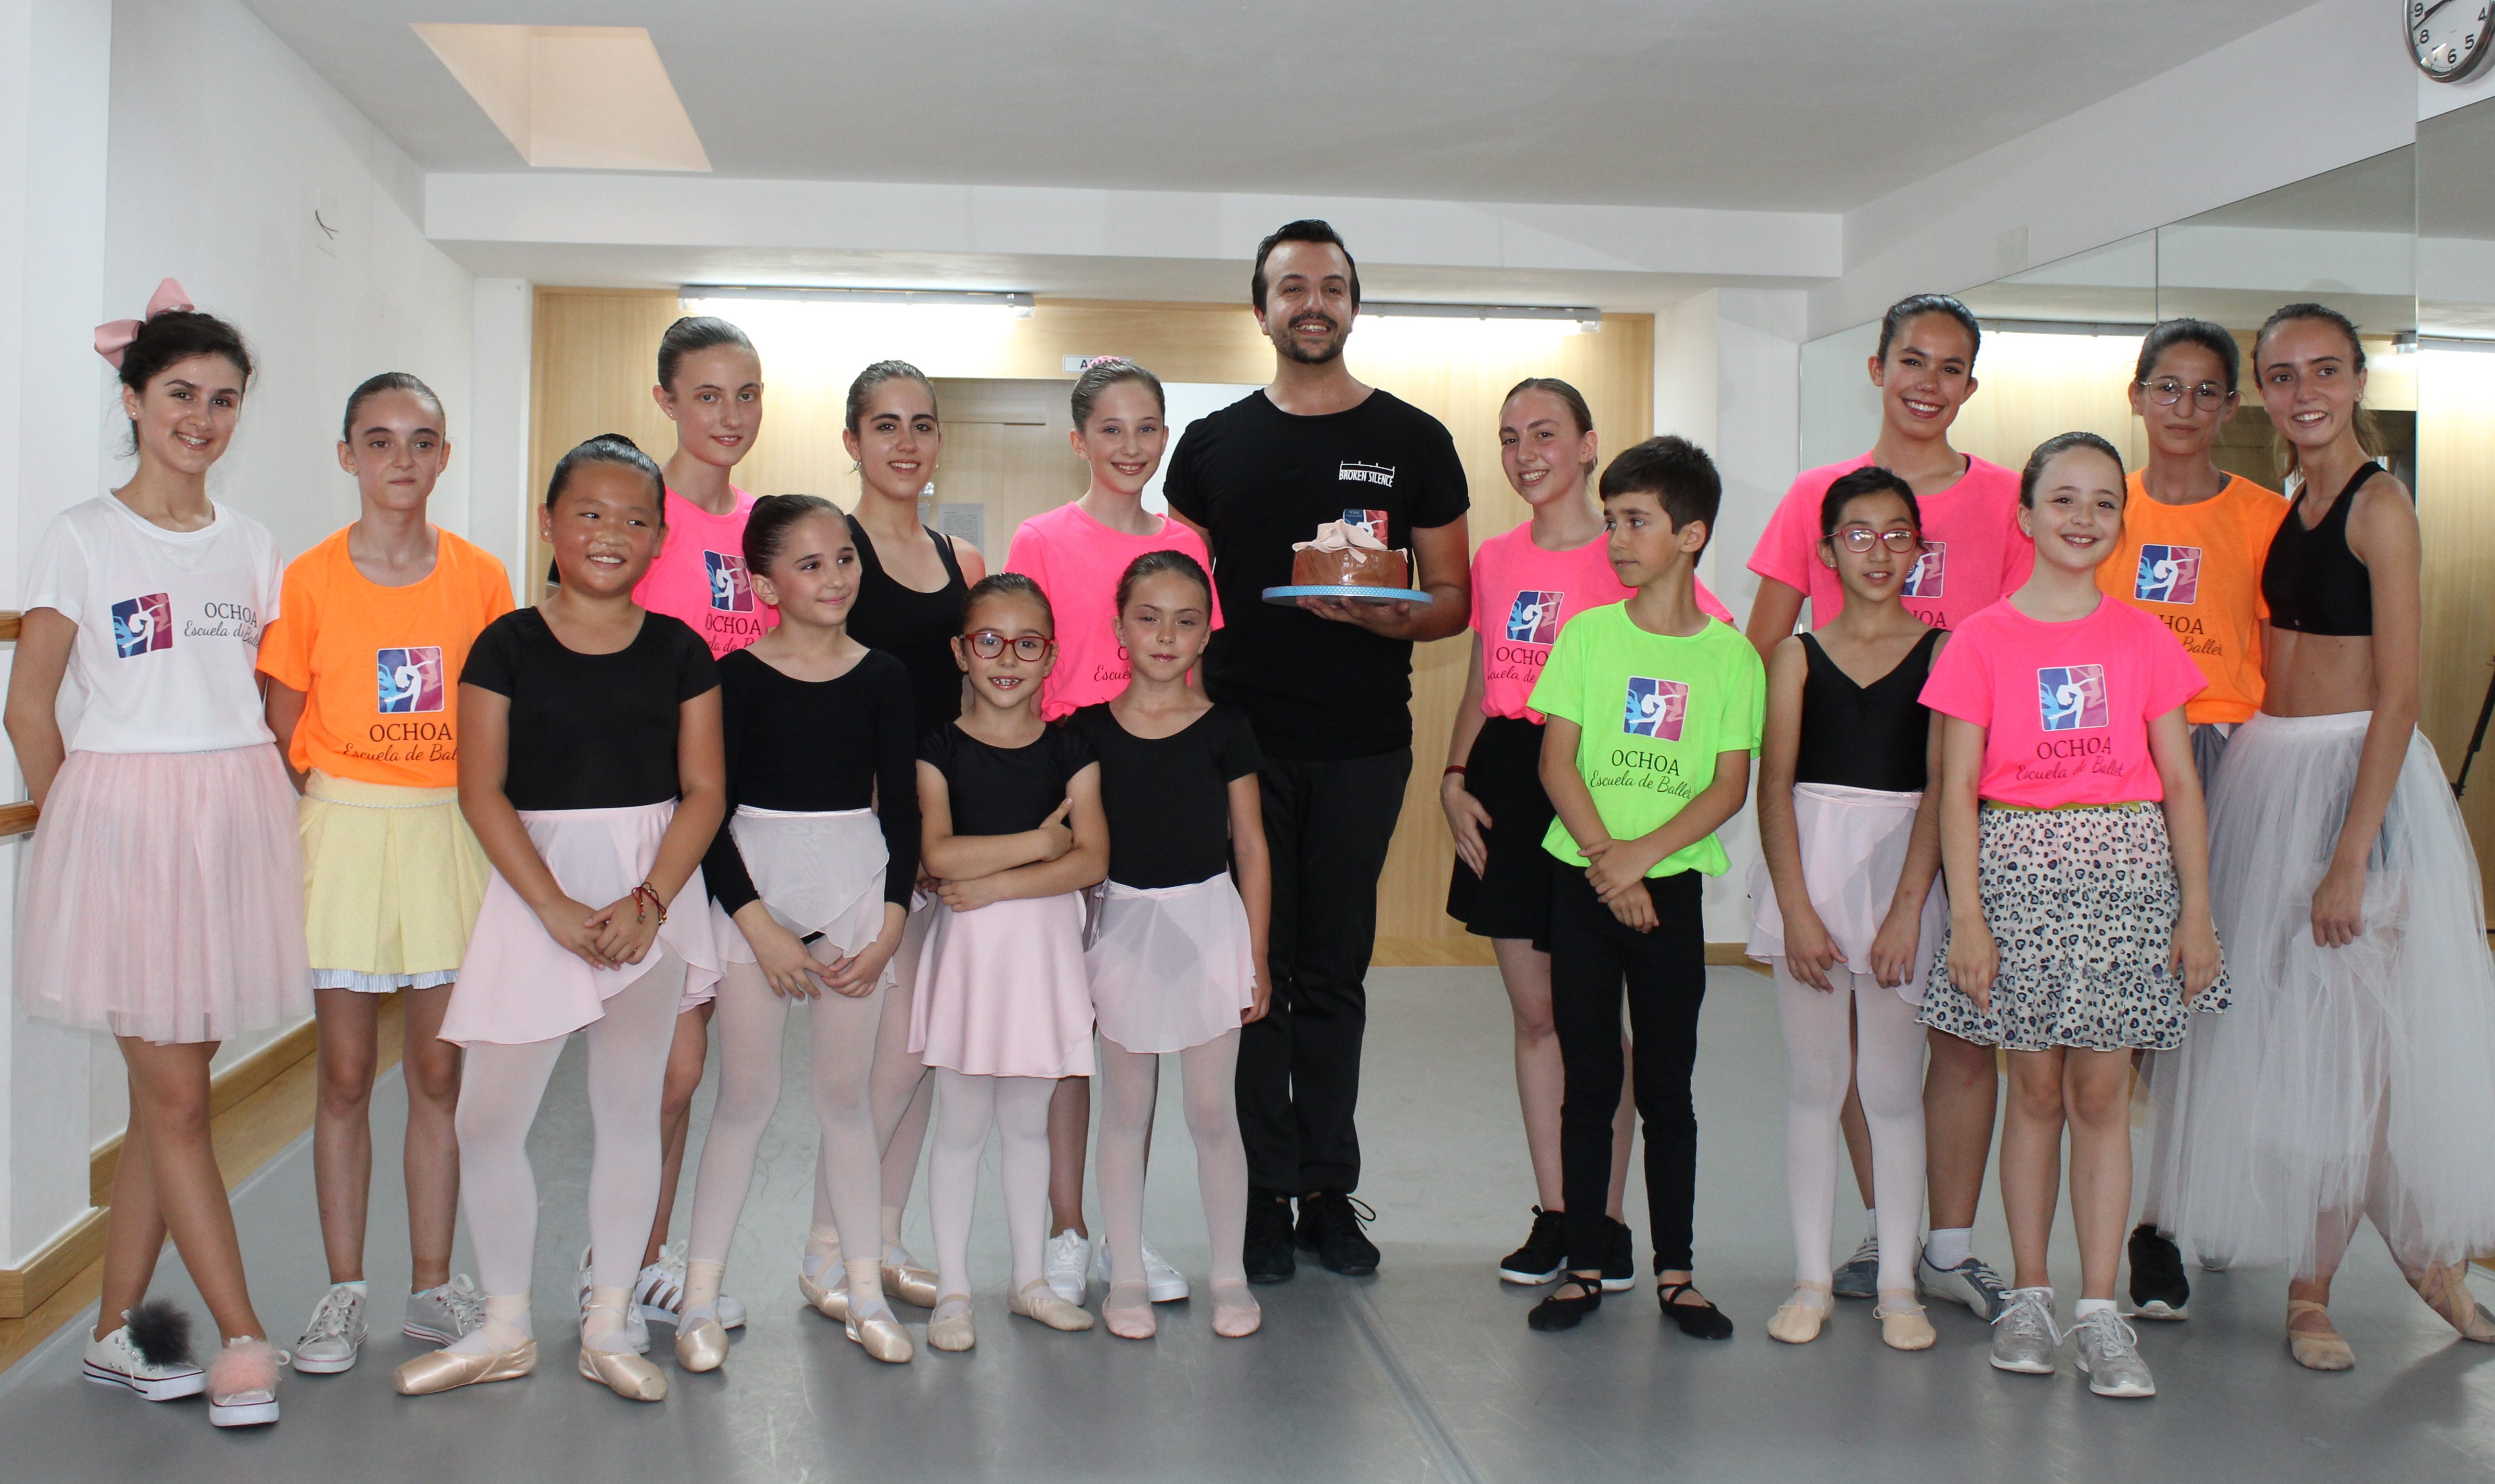 Vicente Ochoa celebra el final del curso en su escuela de ballet